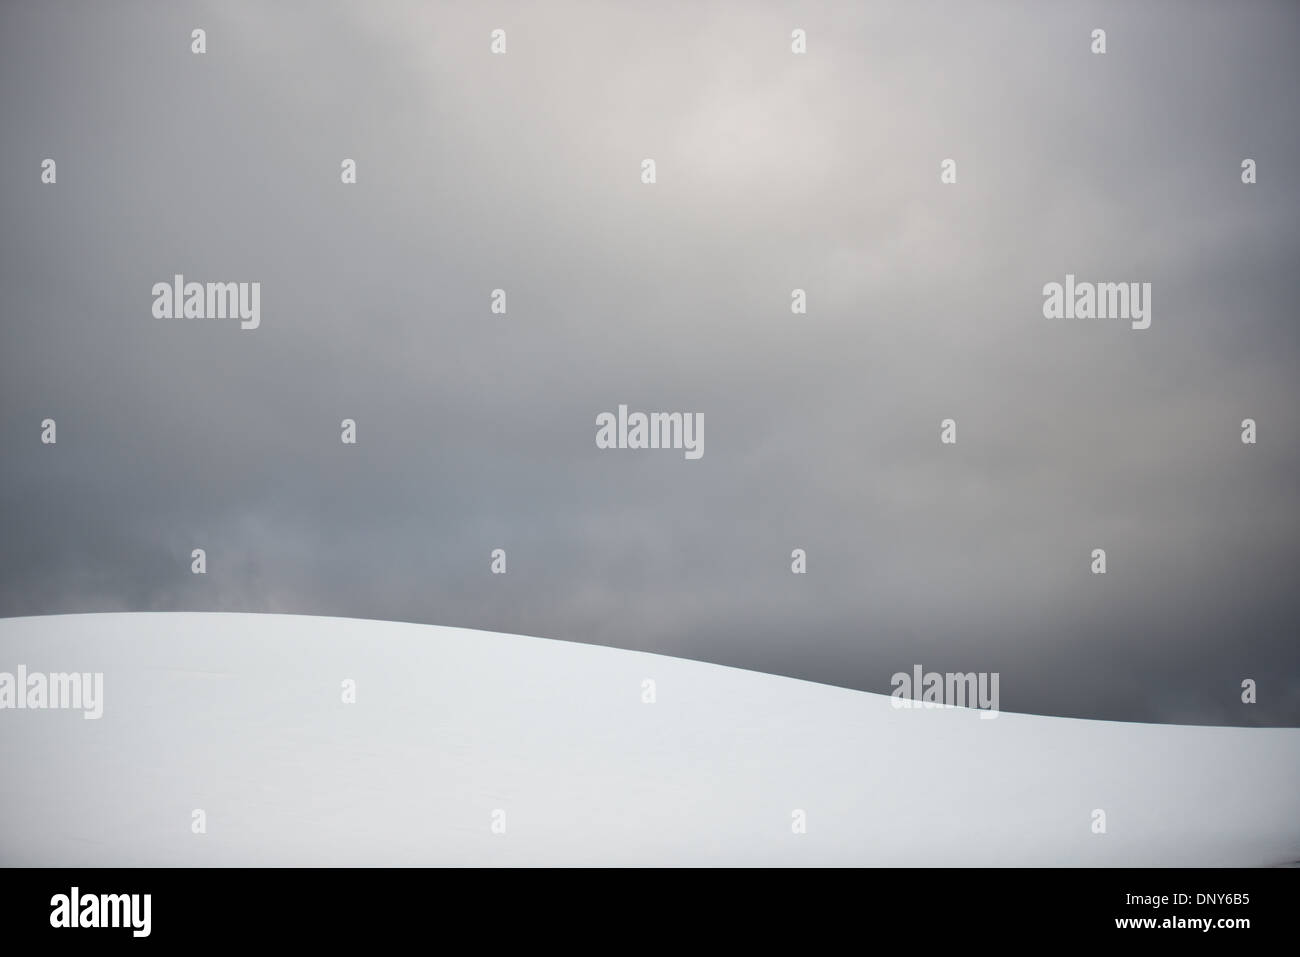 Antartide - la neve e il ghiaccio che ricopre le creste della montagna crea forme contro il grigio cielo nuvoloso dietro nel Lemaire Channel sul lato occidentale della penisola antartica. Il Lemaire Channel è talvolta indicata come "Kodak Gap' in un cenno al suo famoso vedute panoramiche. Foto Stock